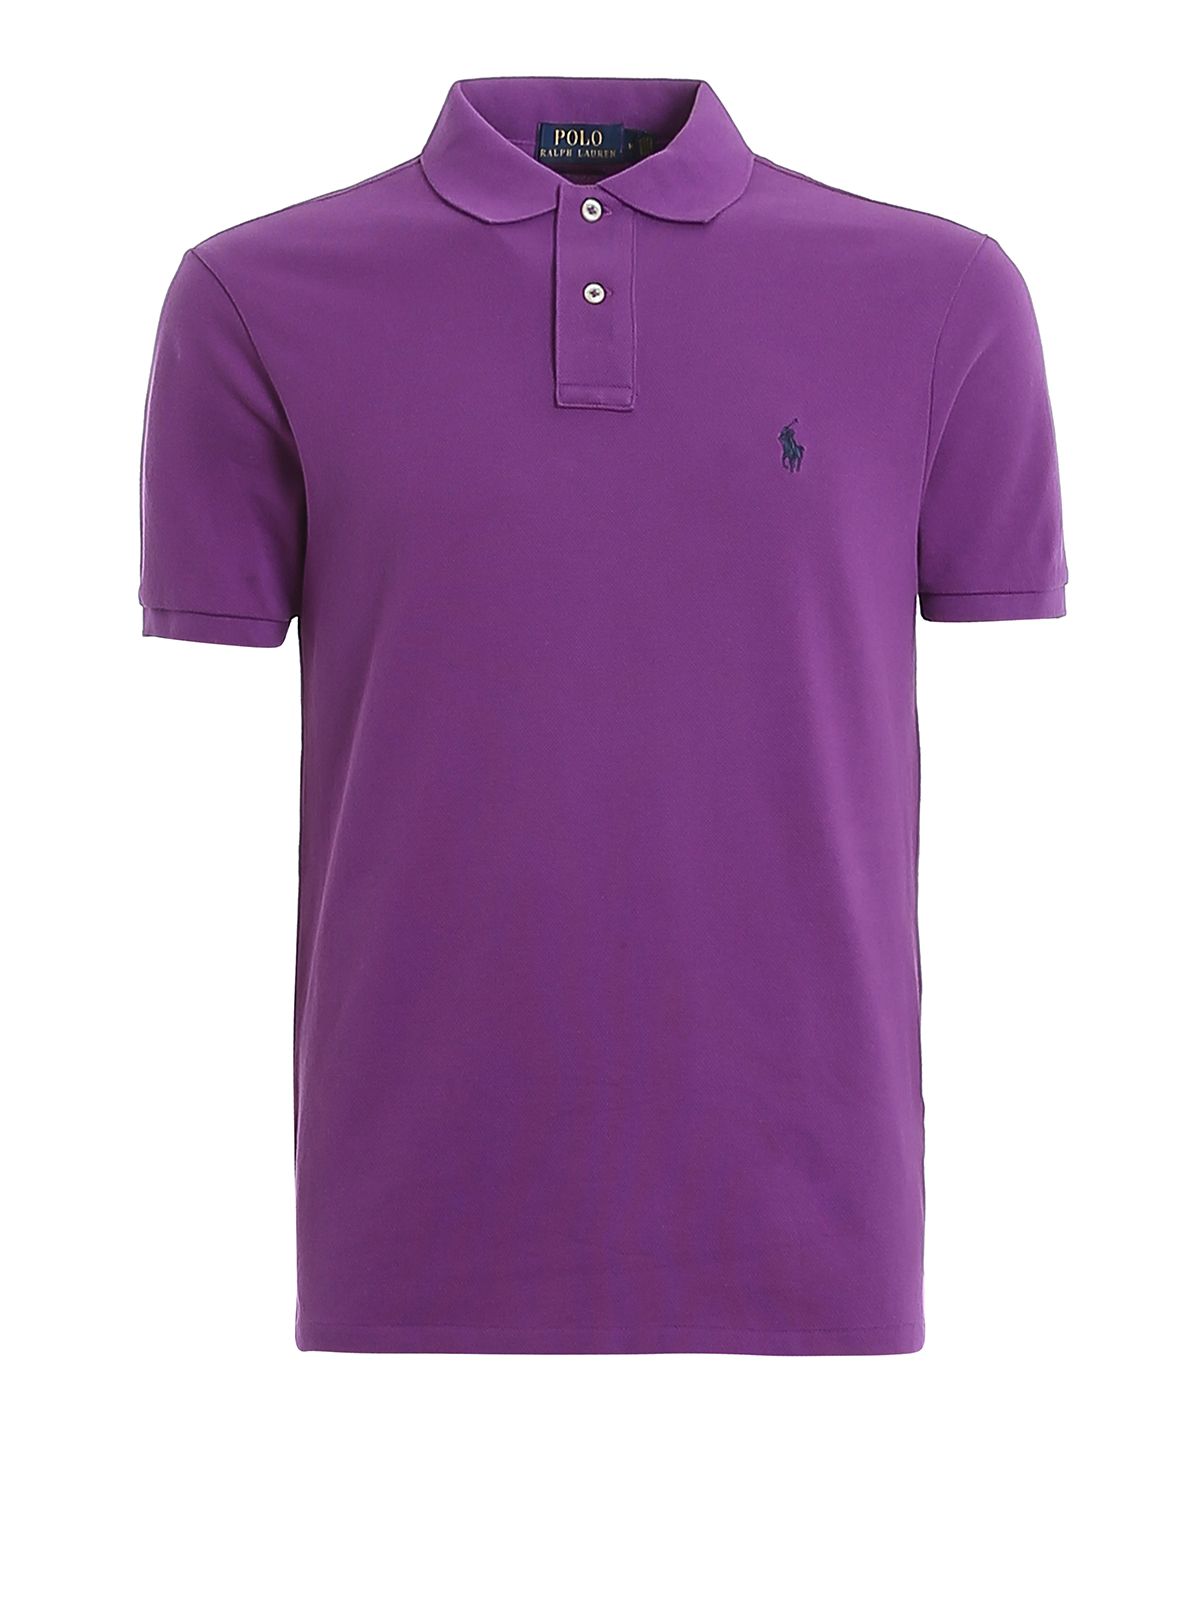 Polo shirts Polo Ralph Lauren - Logo embroidery purple pique polo shirt -  710795080030